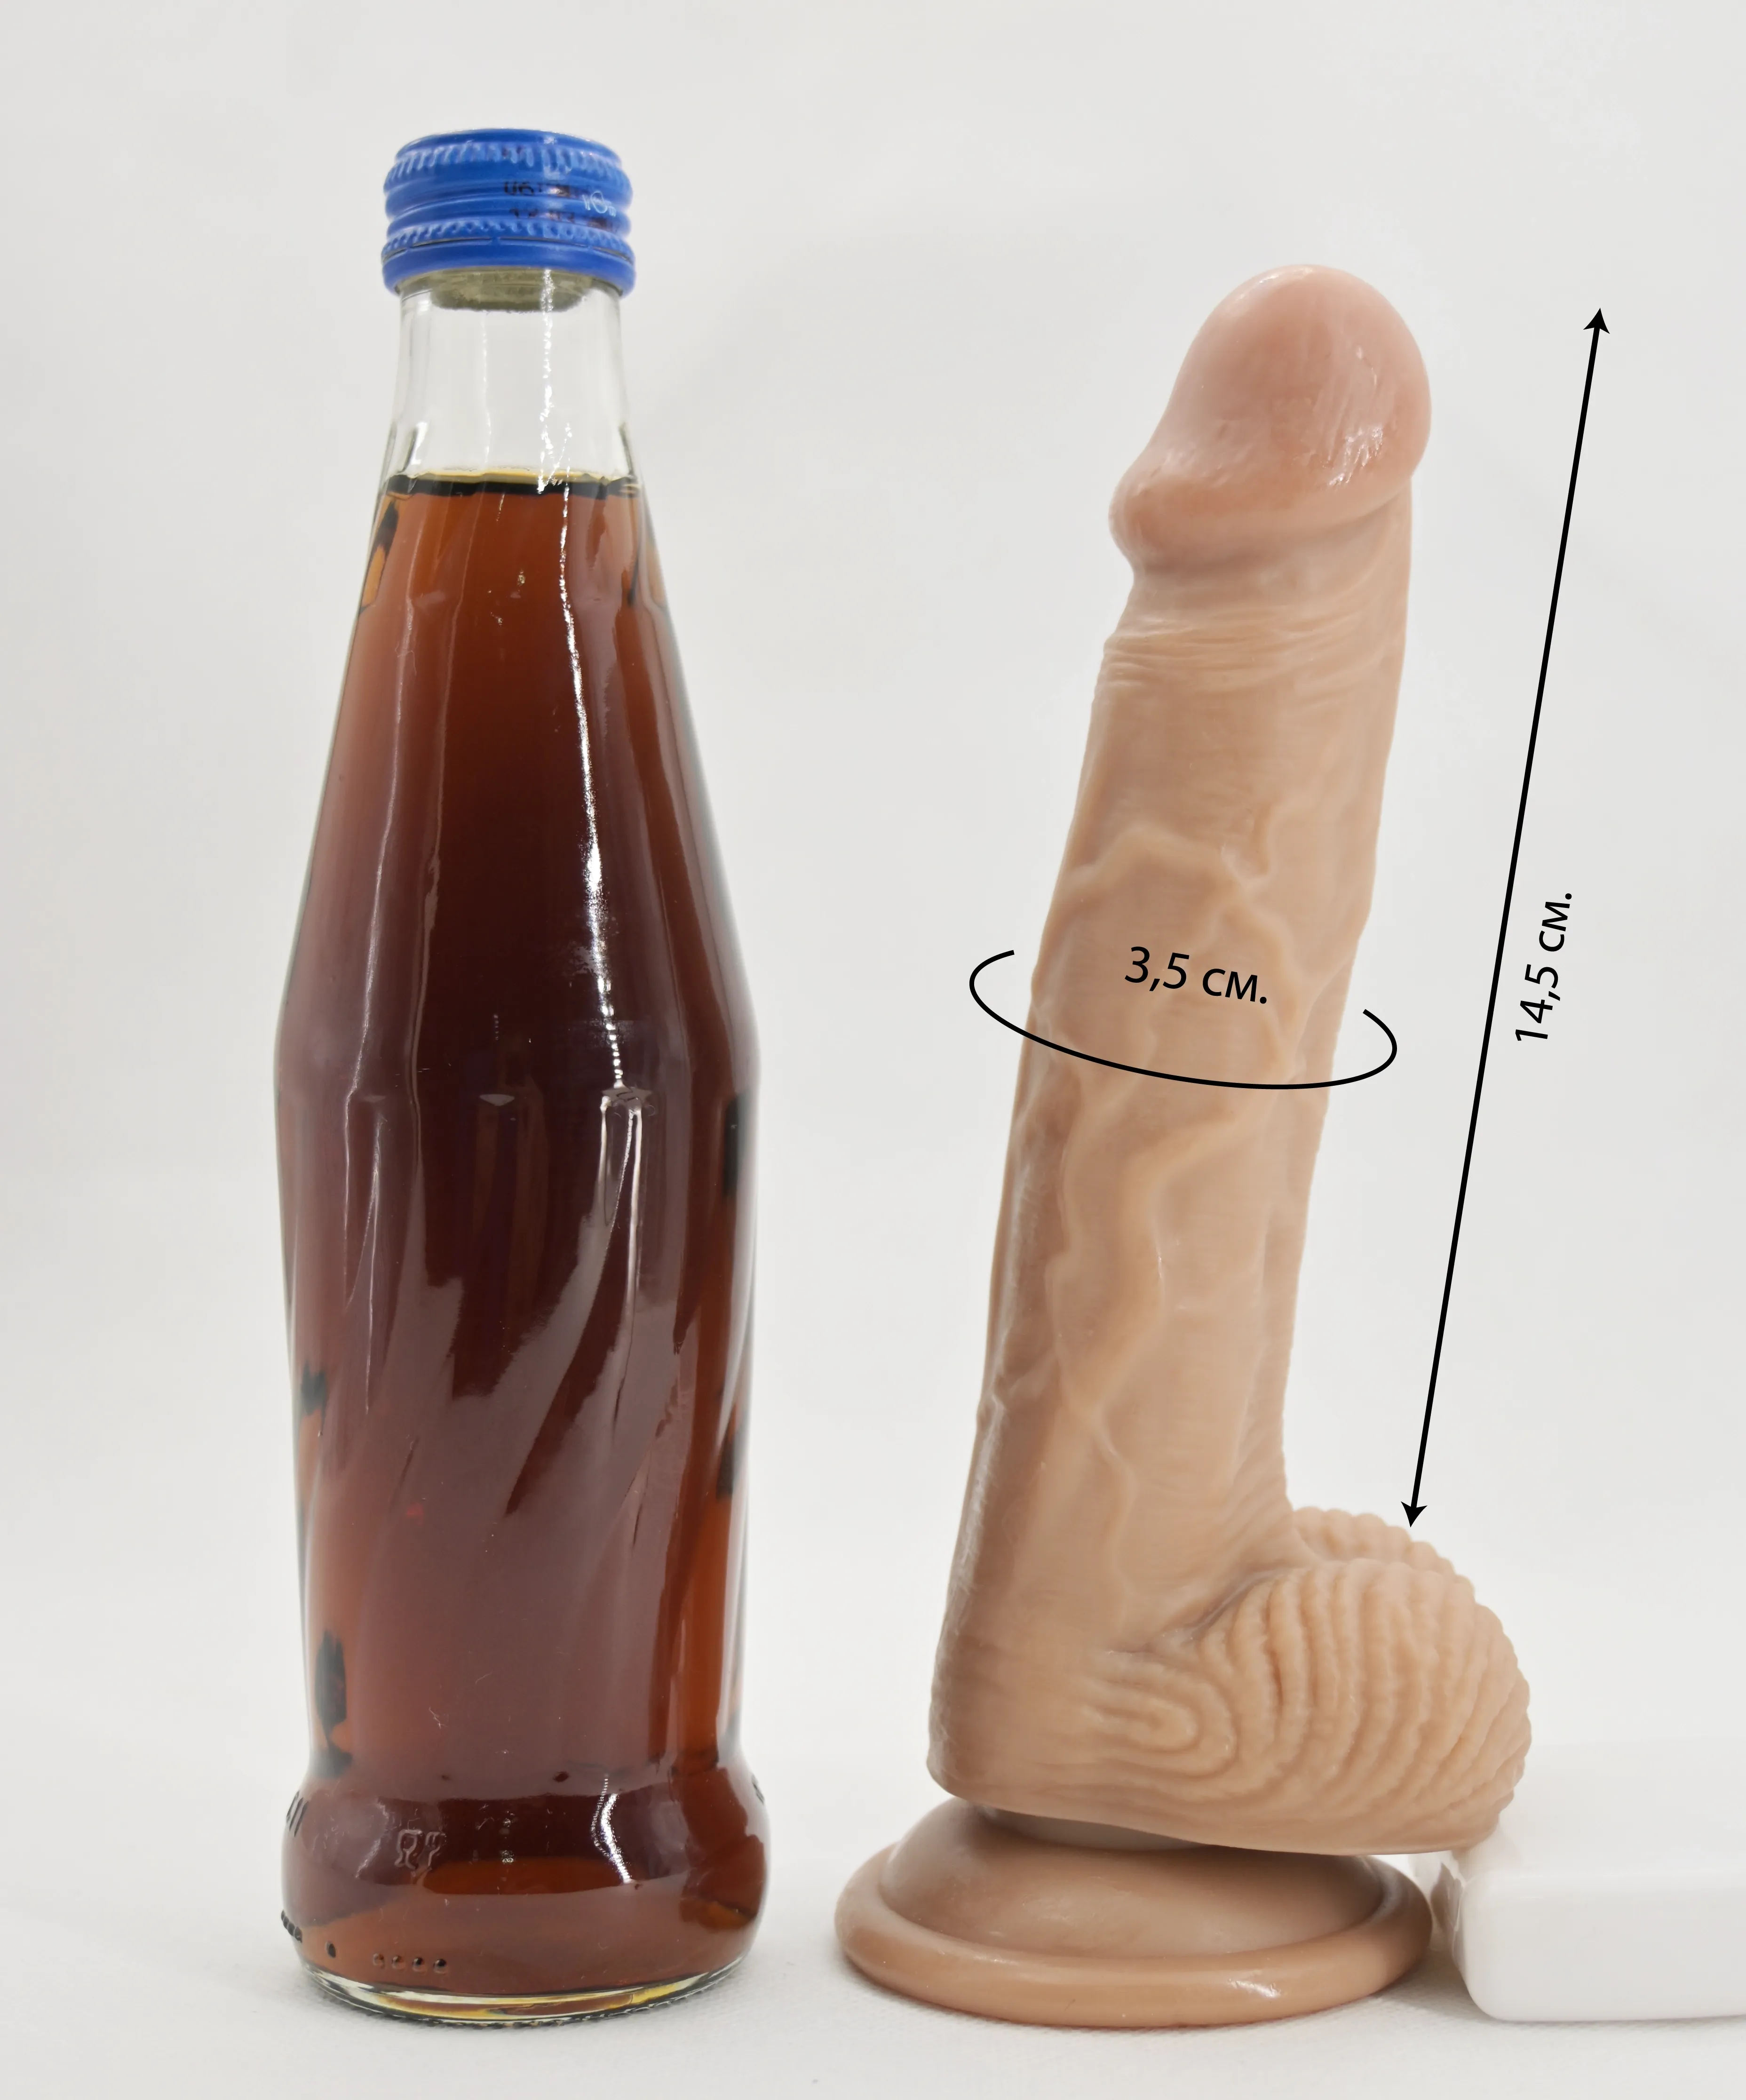 Размеры дилдо и сравнение размера со стеклянной бутылкой 0,33 л.